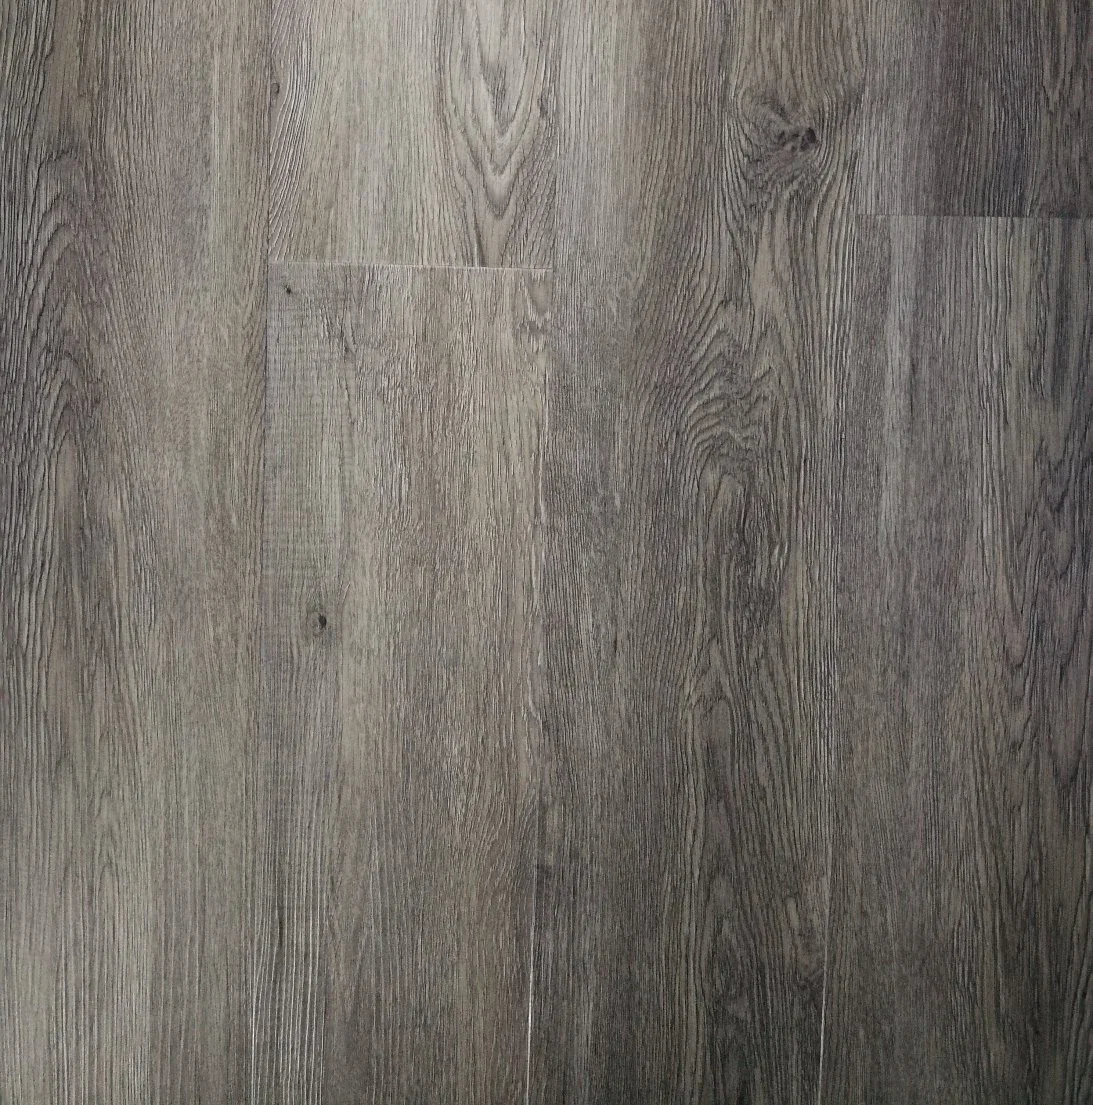 Luxury Bathroom Design Vinyl Wooden Floor Tiles